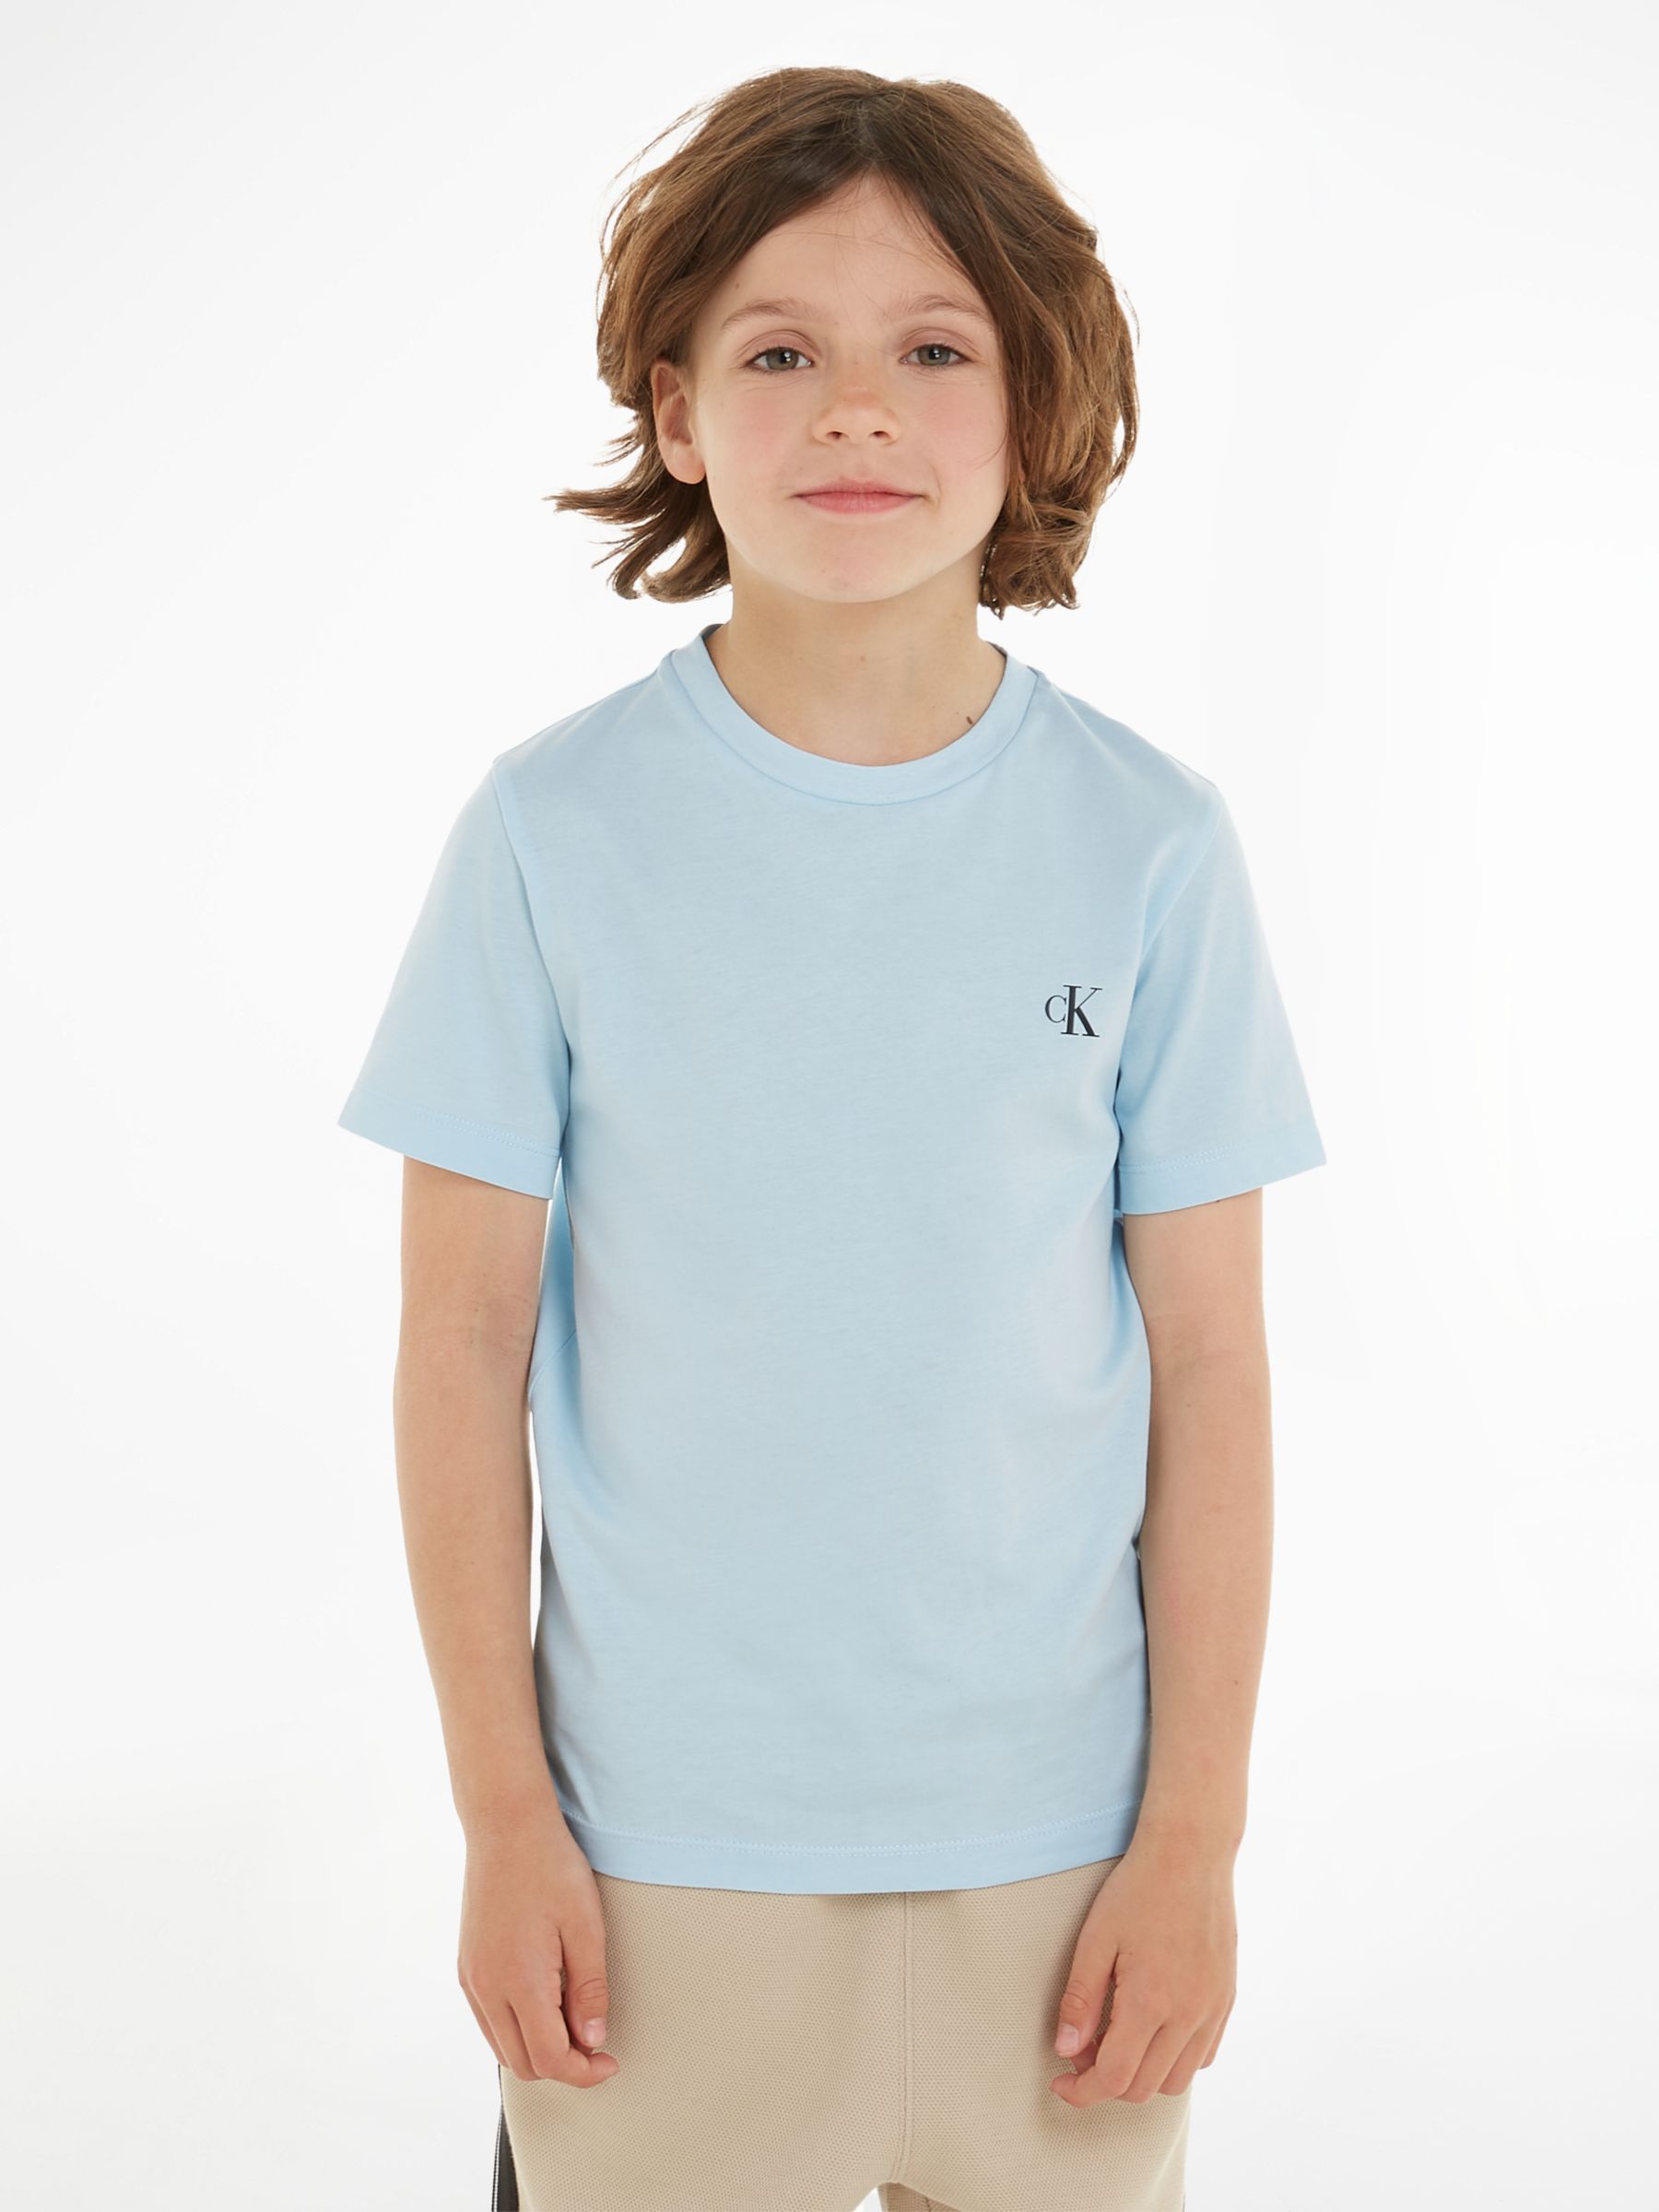 Short T-Shirts, of Klein Sleeve Lewis Cotton Blue/Ck Calvin Partners Keepsake Black at & Kids\' John 2, Monogram Pack